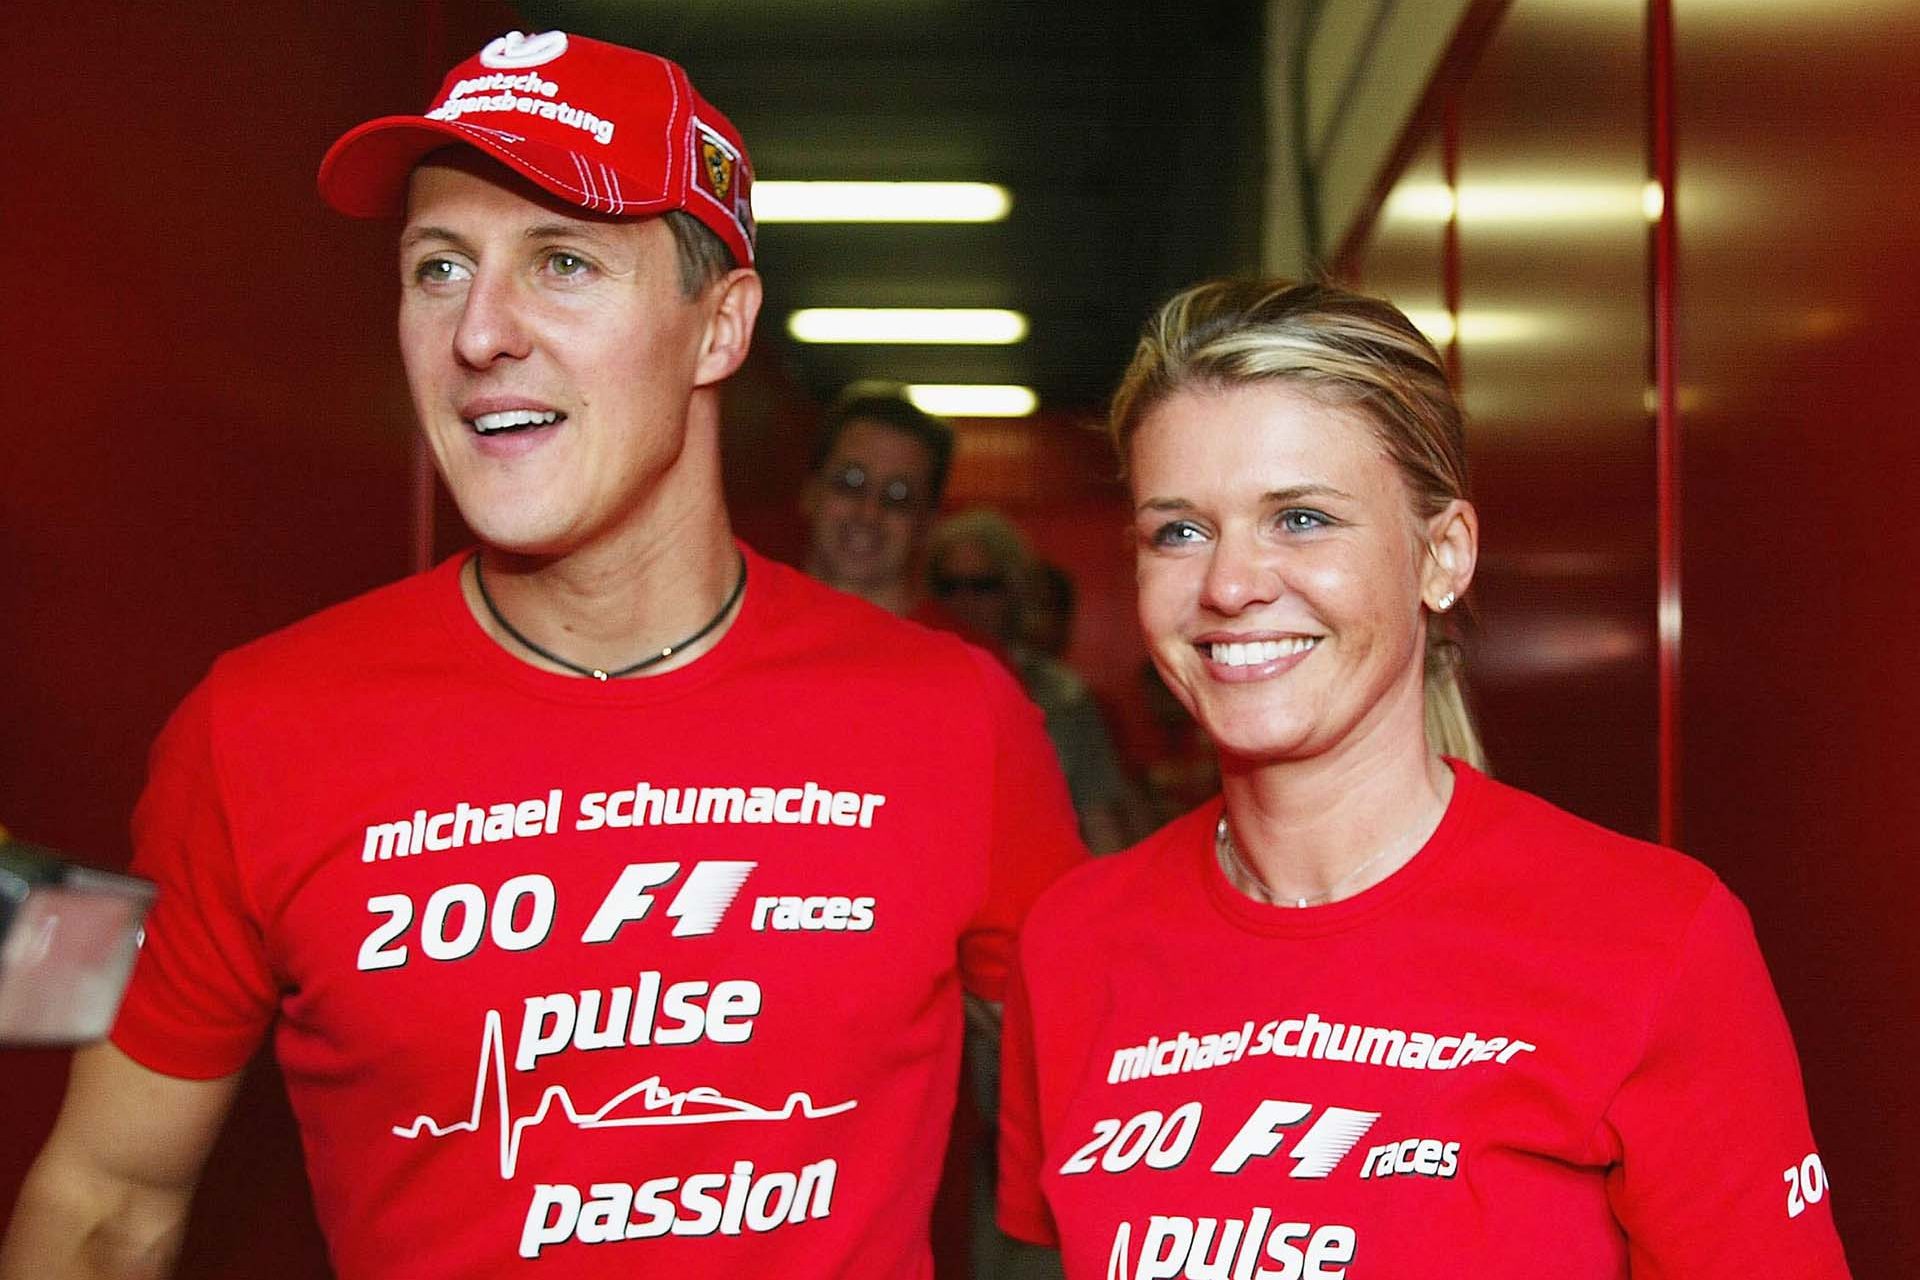 Die schwere Entscheidung, die Schumachers Frau für seine Zukunft traf